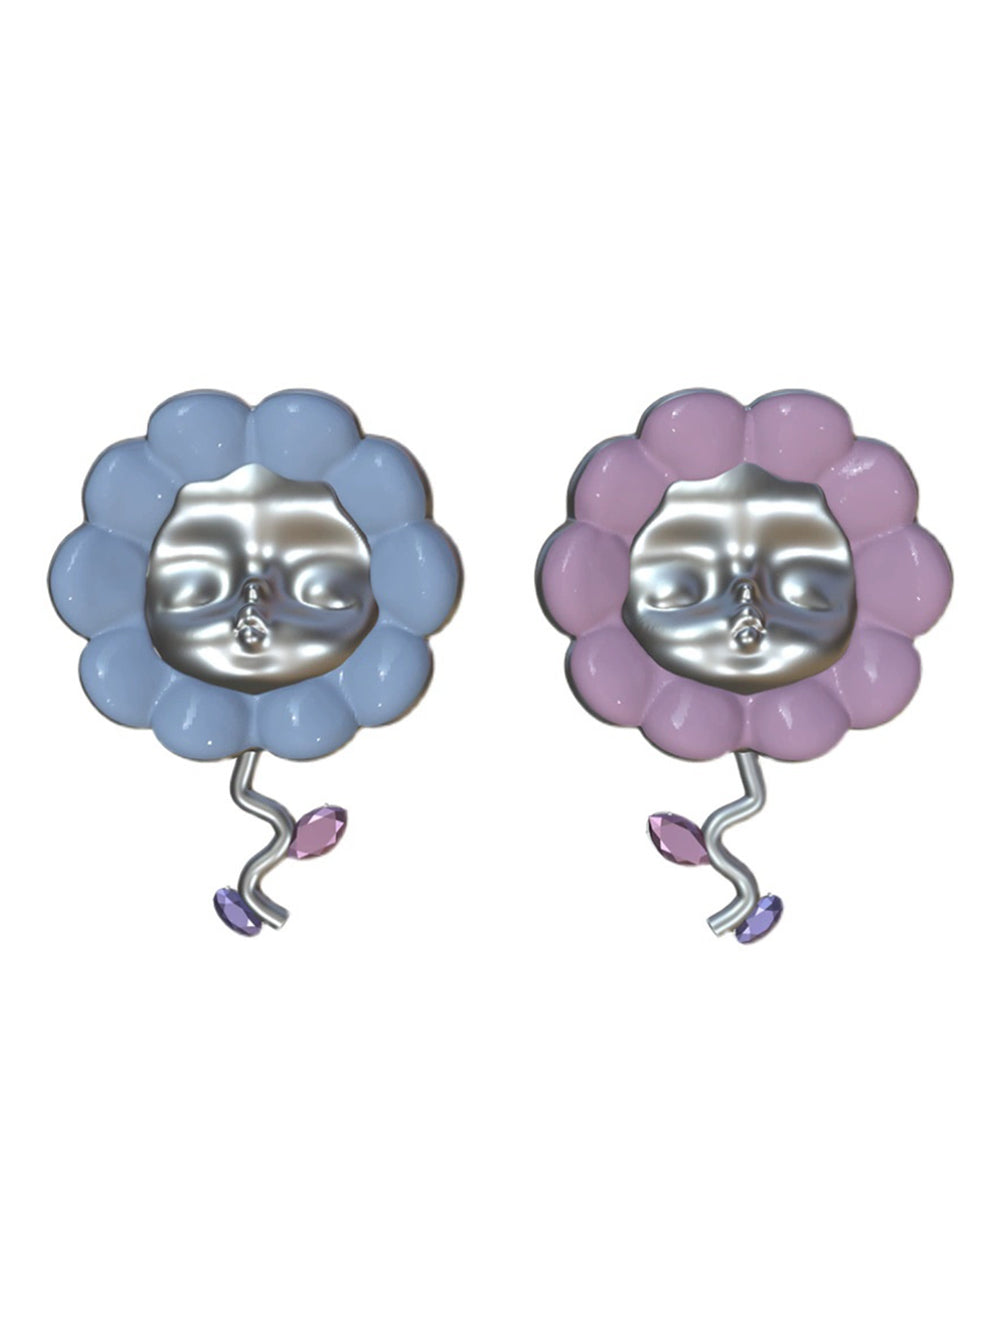 MUKTANK×QUANDO Mori Flower Dream Sterling Silver Earrings